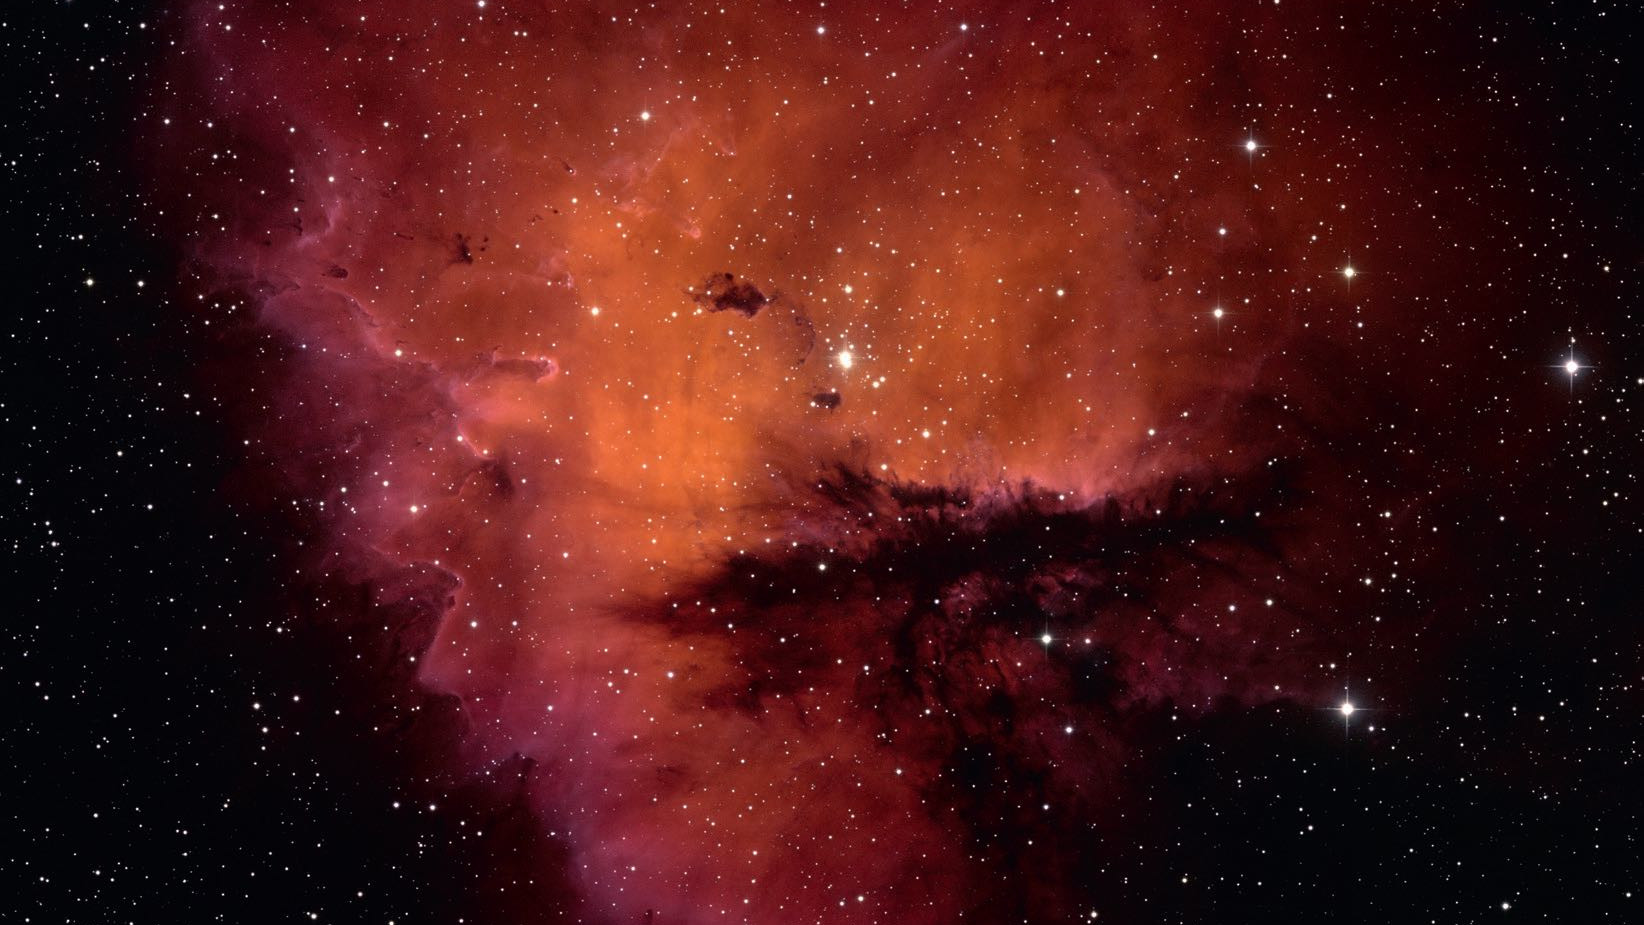 Kształt NGC 281 przypomina Pacmana nie tylko fotograficznie, ale także wizualnie. NSF/AURA/WIYN/T. Rector (University of Alaska)